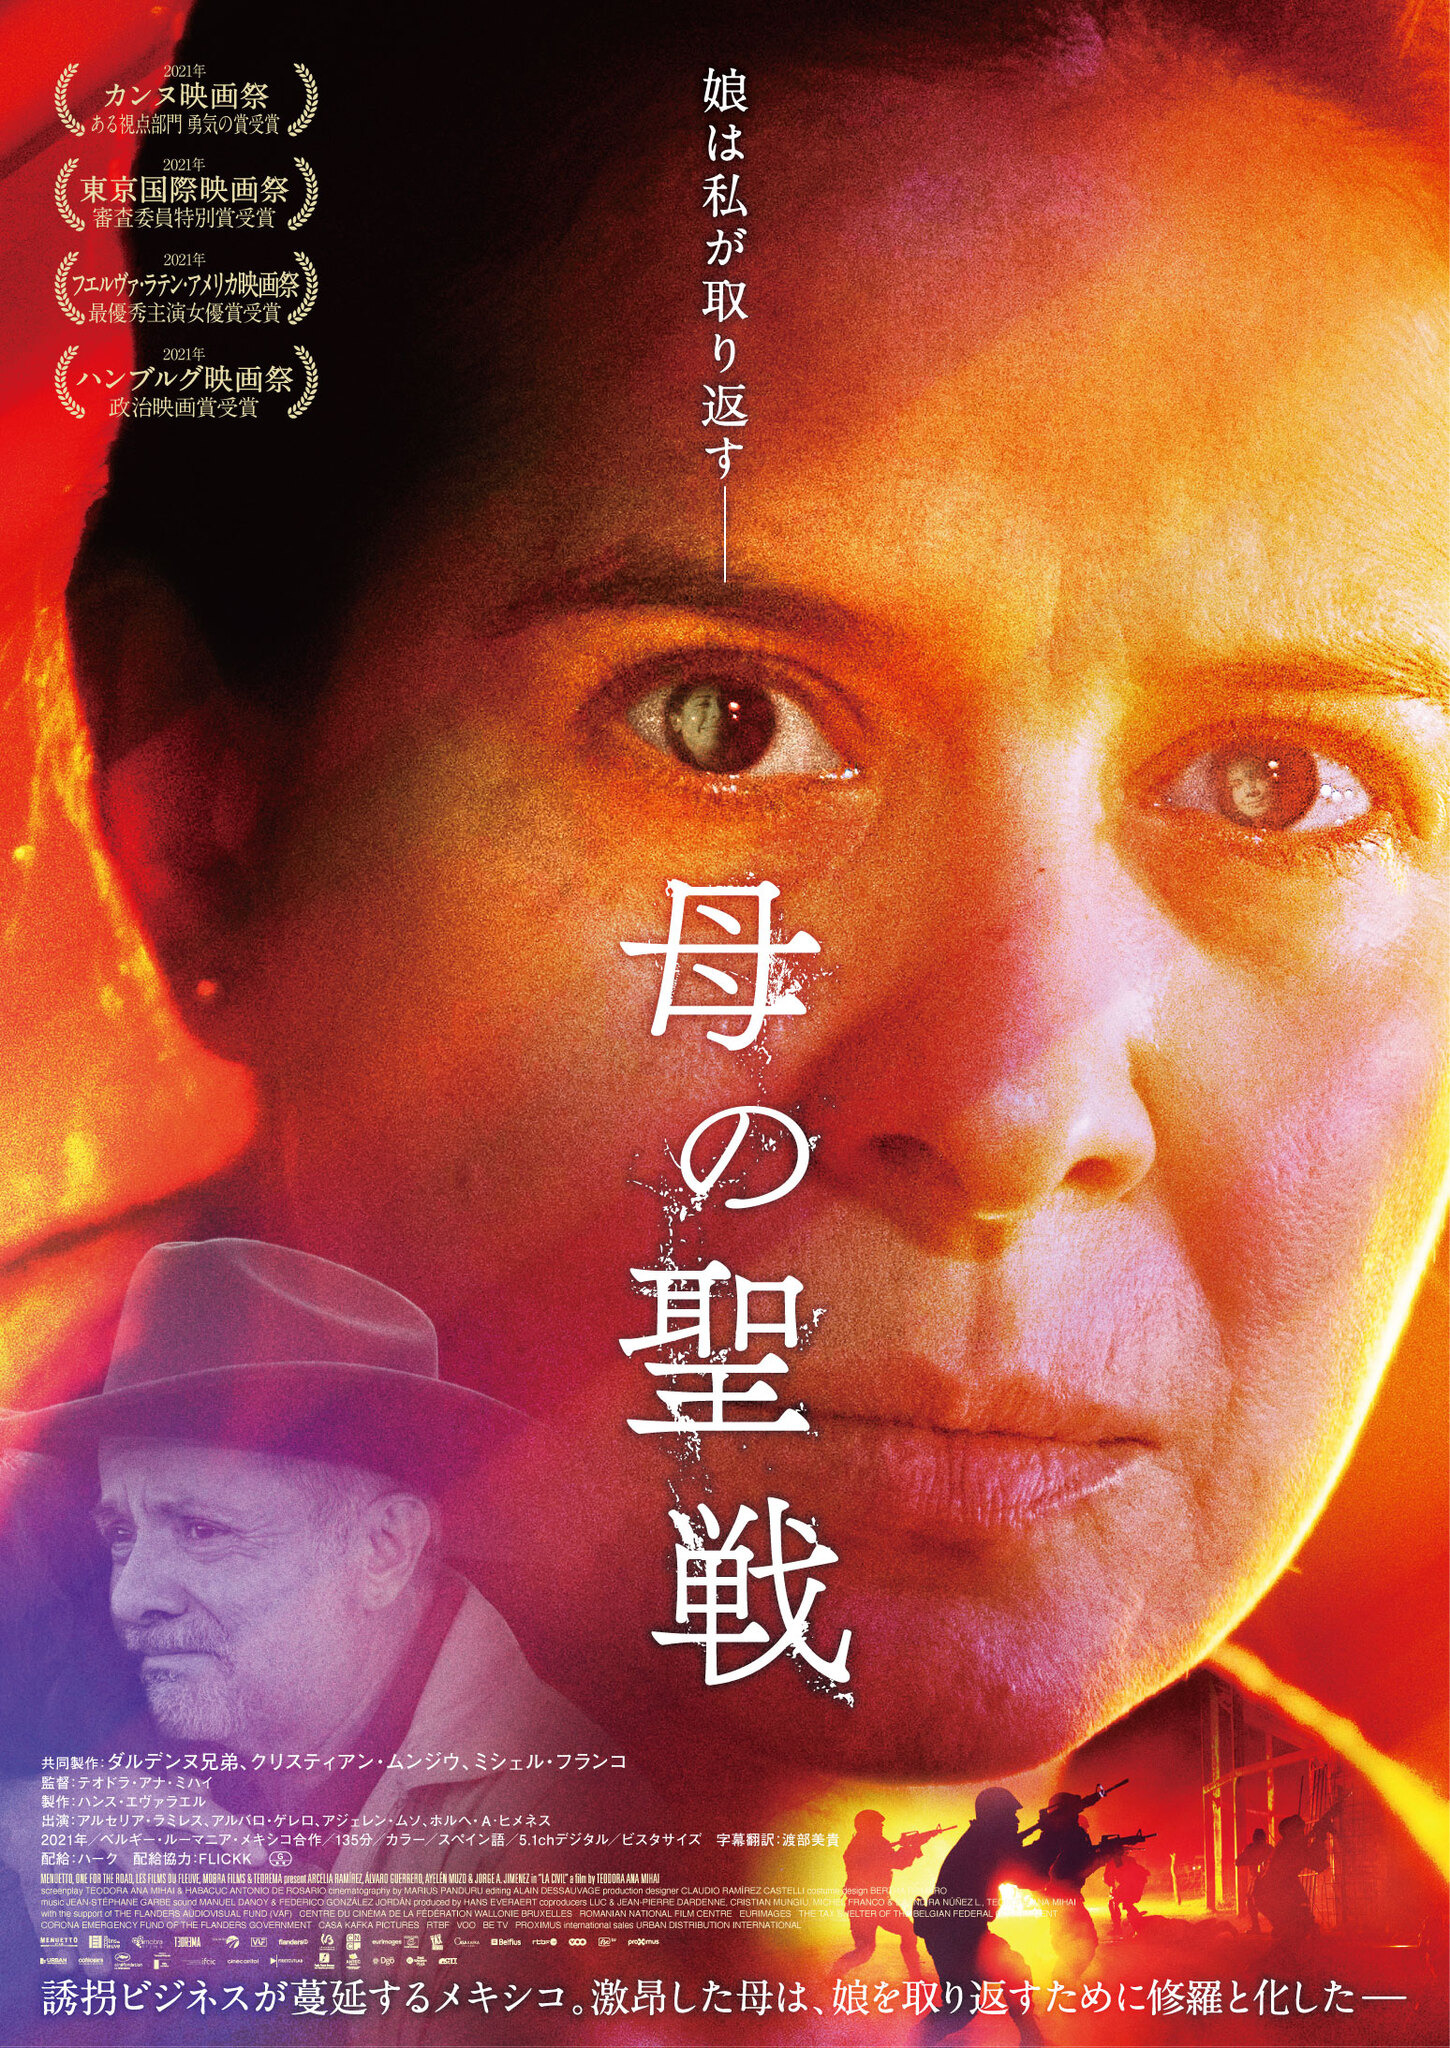 誘拐ビジネスの闇へ…東京国際映画祭で審査委員特別賞『母の聖戦』公開 